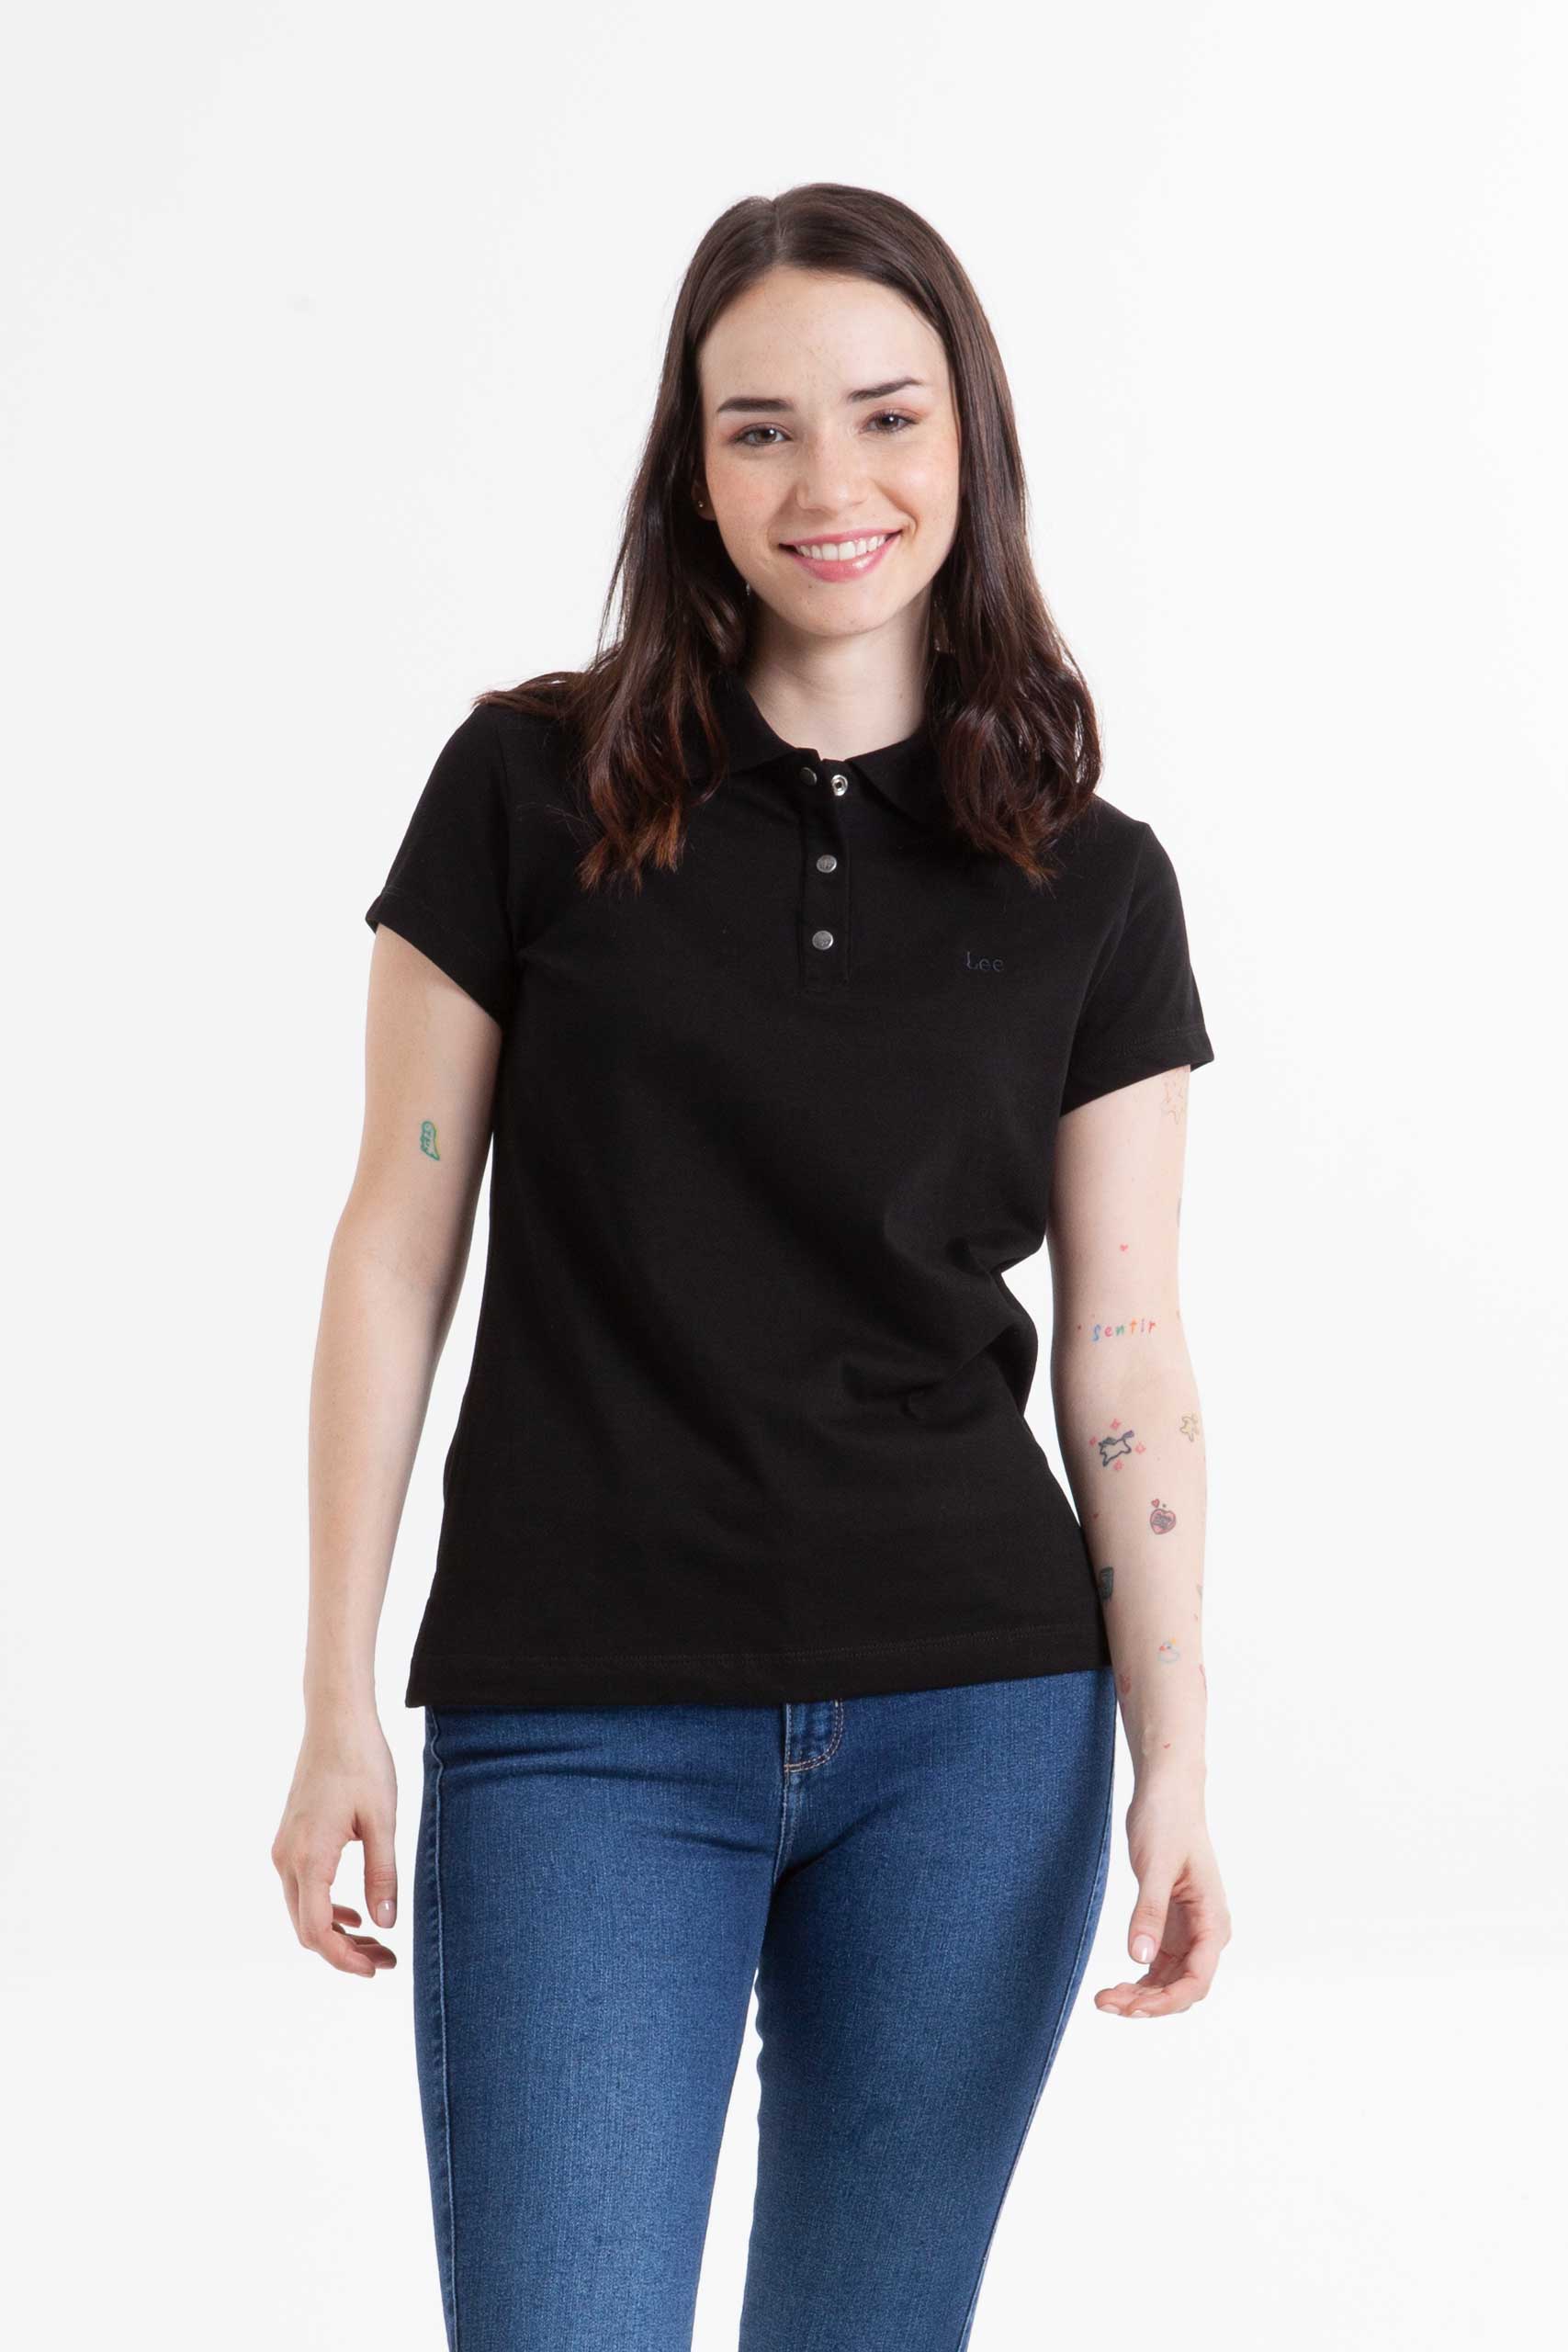 Vista frontal de camiseta color negro marca lee.